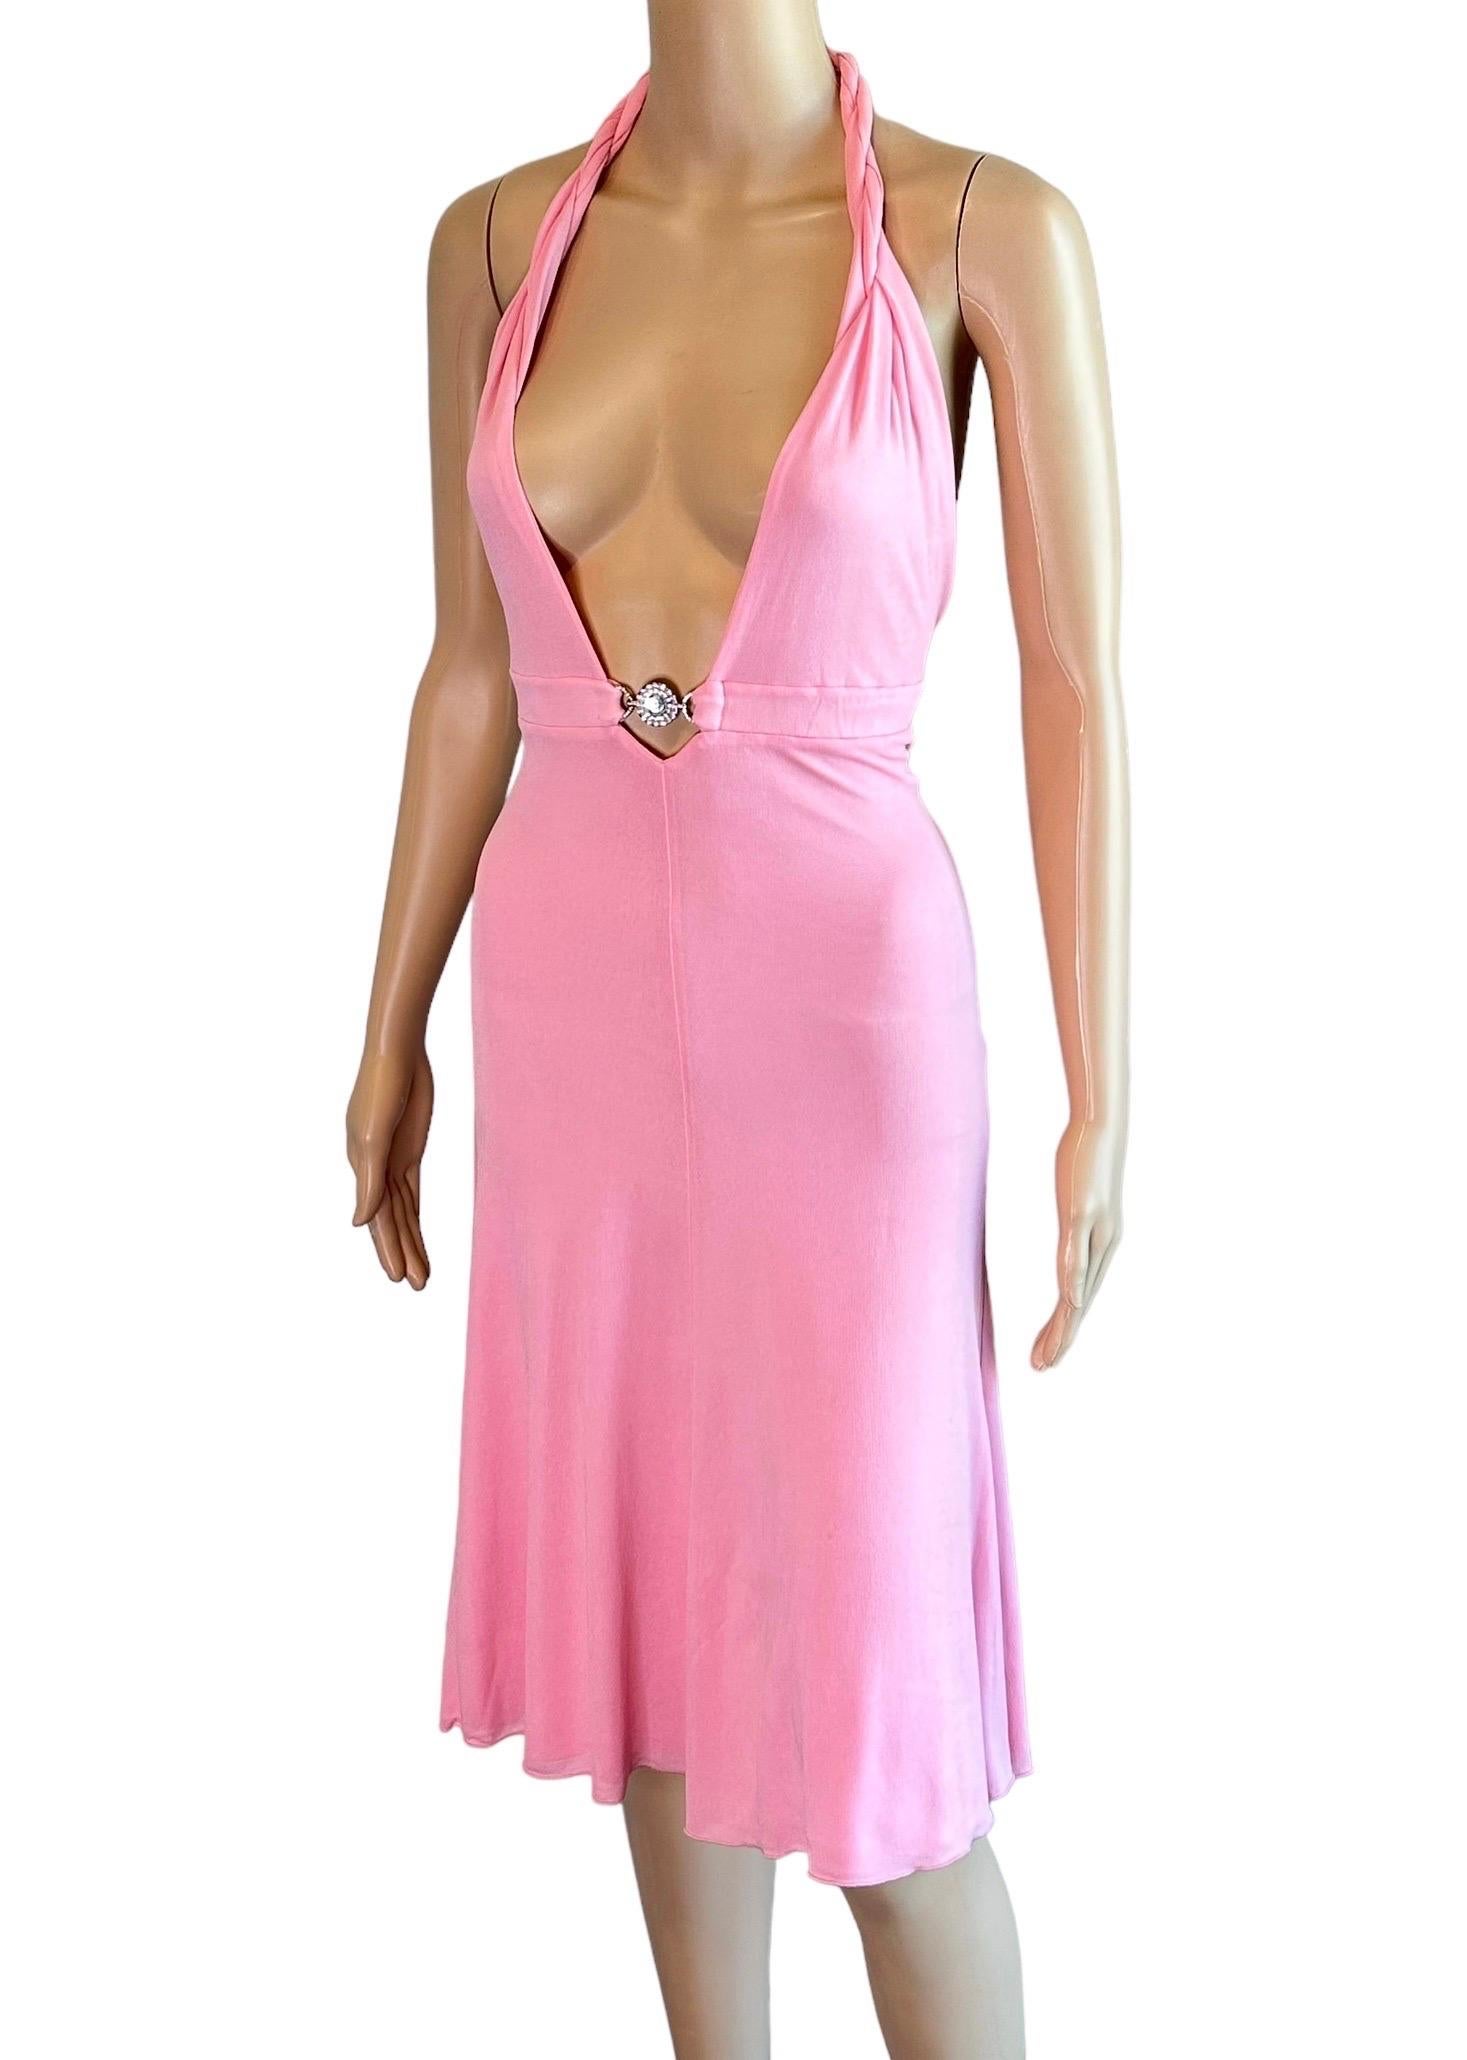 Versace S/S 2007 Crystal Logo Plunging Neckline Backless Halter Pink Dress 1